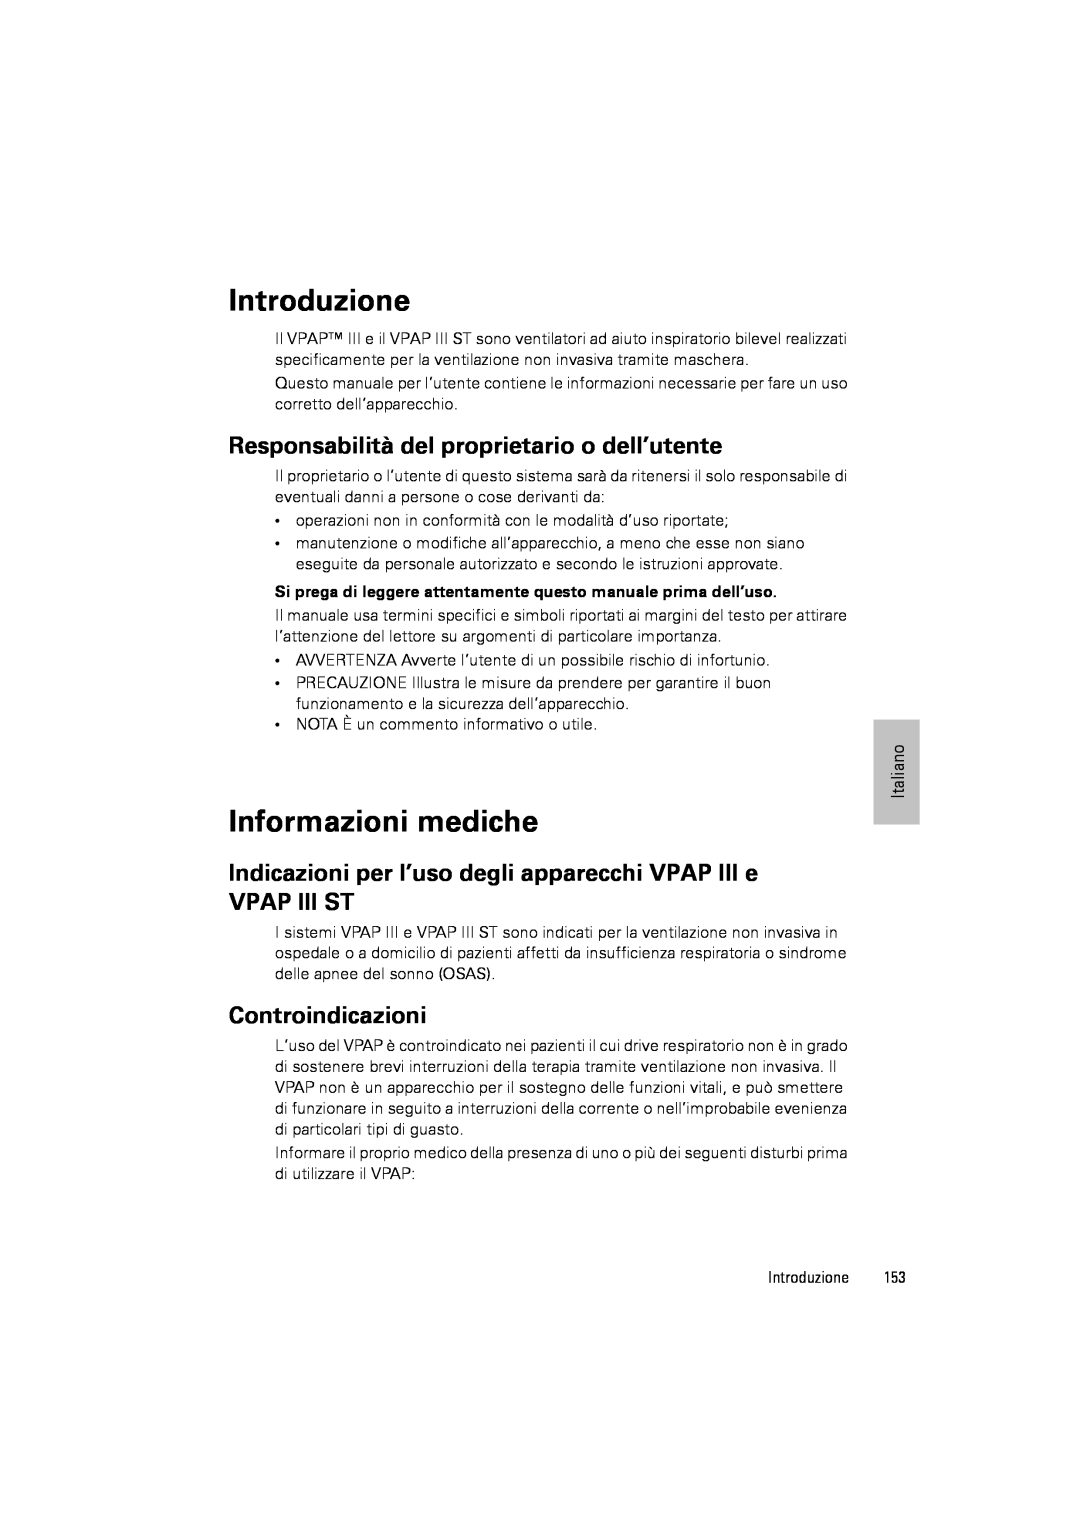 ResMed III & III ST Introduzione, Informazioni mediche, Responsabilità del proprietario o dell’utente, Vpap Iii St 